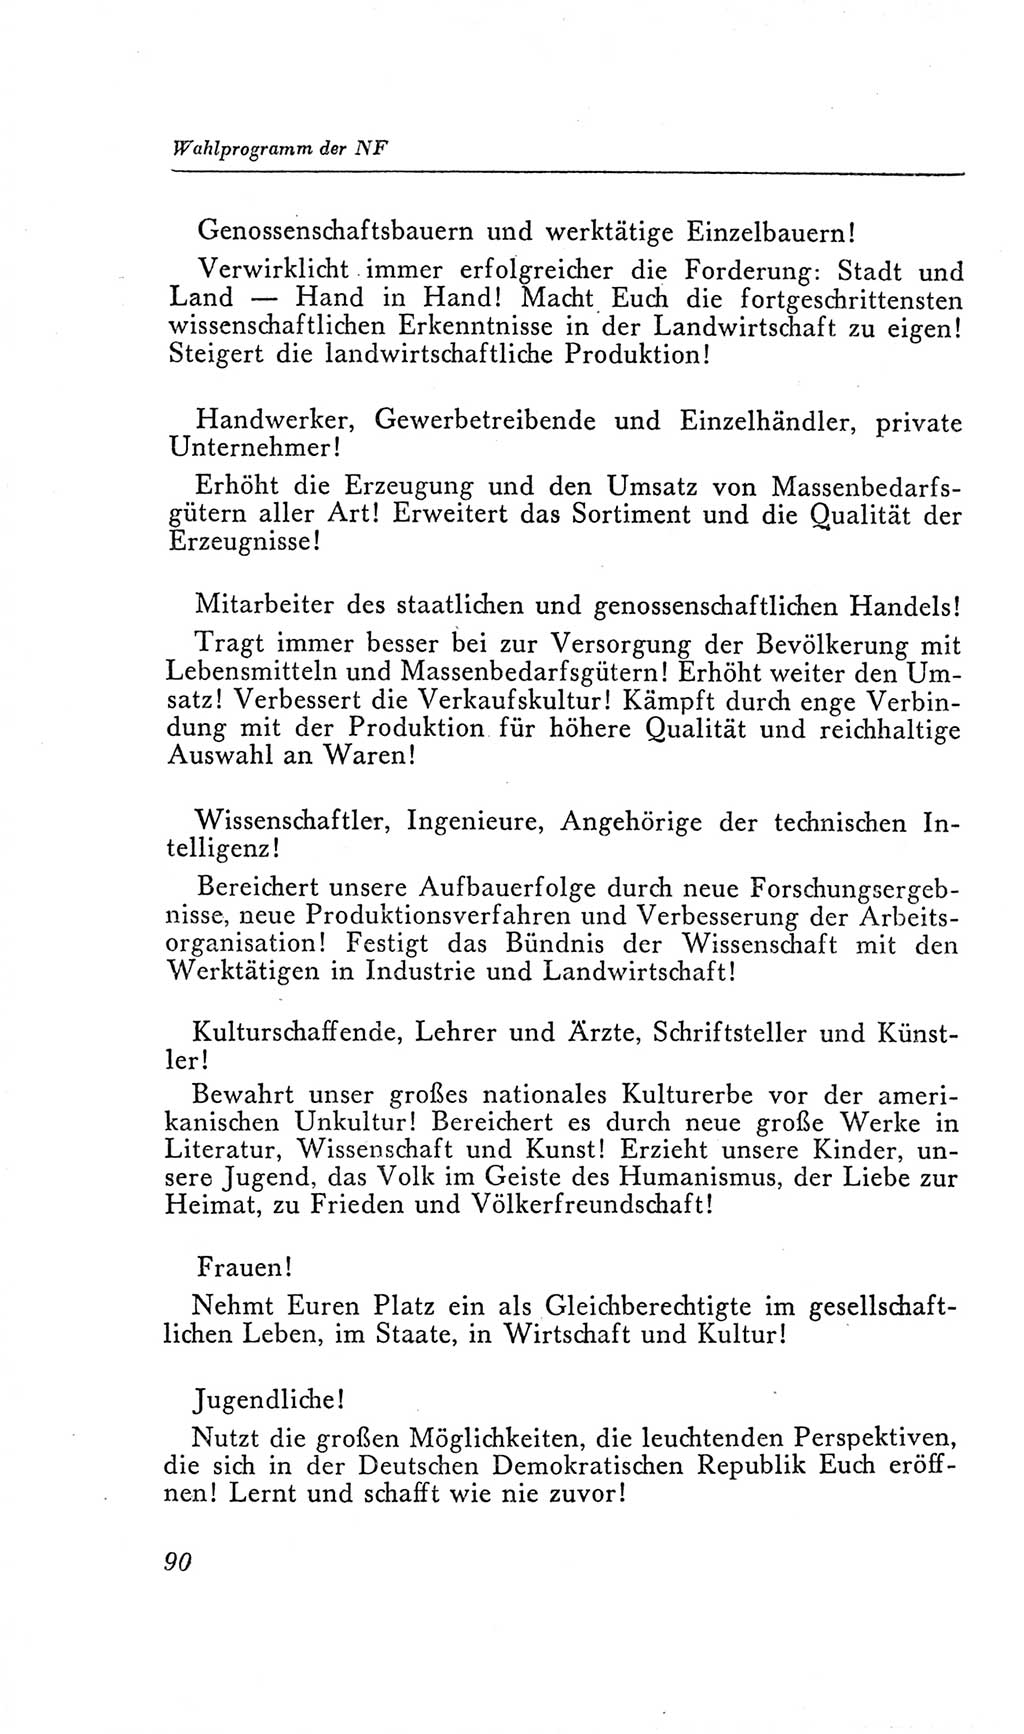 Handbuch der Volkskammer (VK) der Deutschen Demokratischen Republik (DDR), 2. Wahlperiode 1954-1958, Seite 90 (Hdb. VK. DDR, 2. WP. 1954-1958, S. 90)